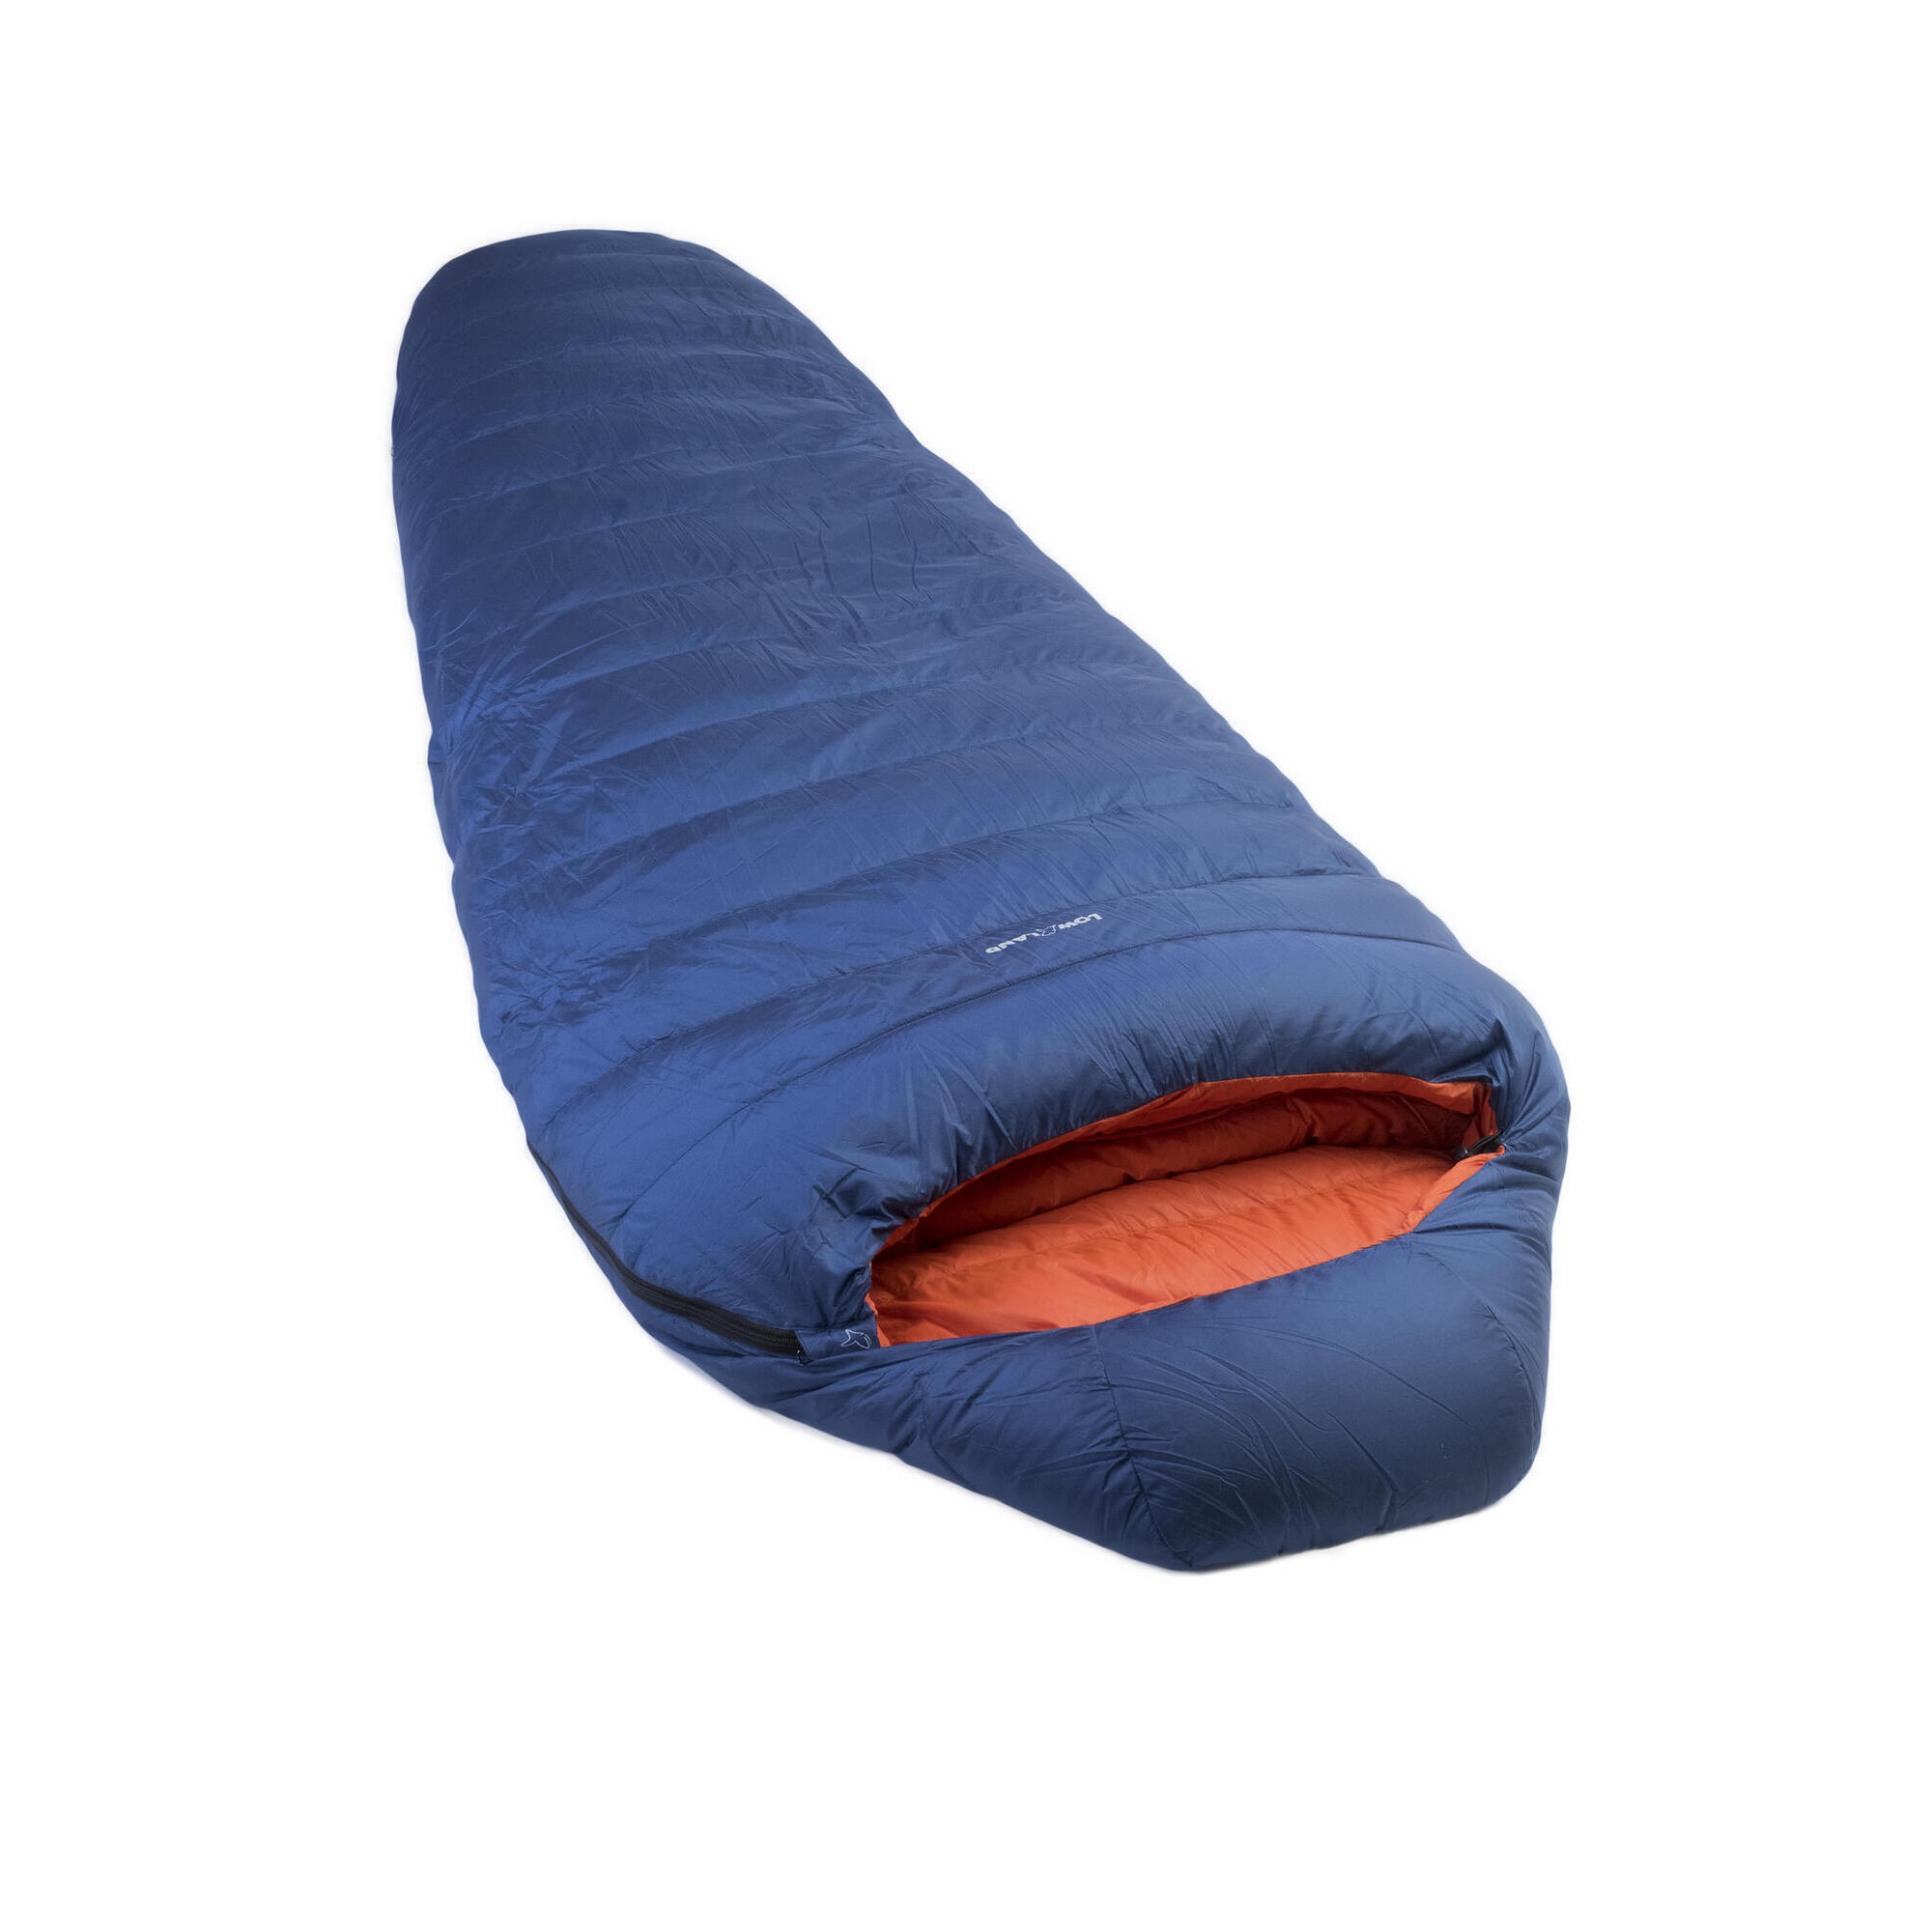 Мешок Kibo - 5 пуховый спальный нейлоновый 225x80 см, сине - оранжевый спальный мешок чайка large250